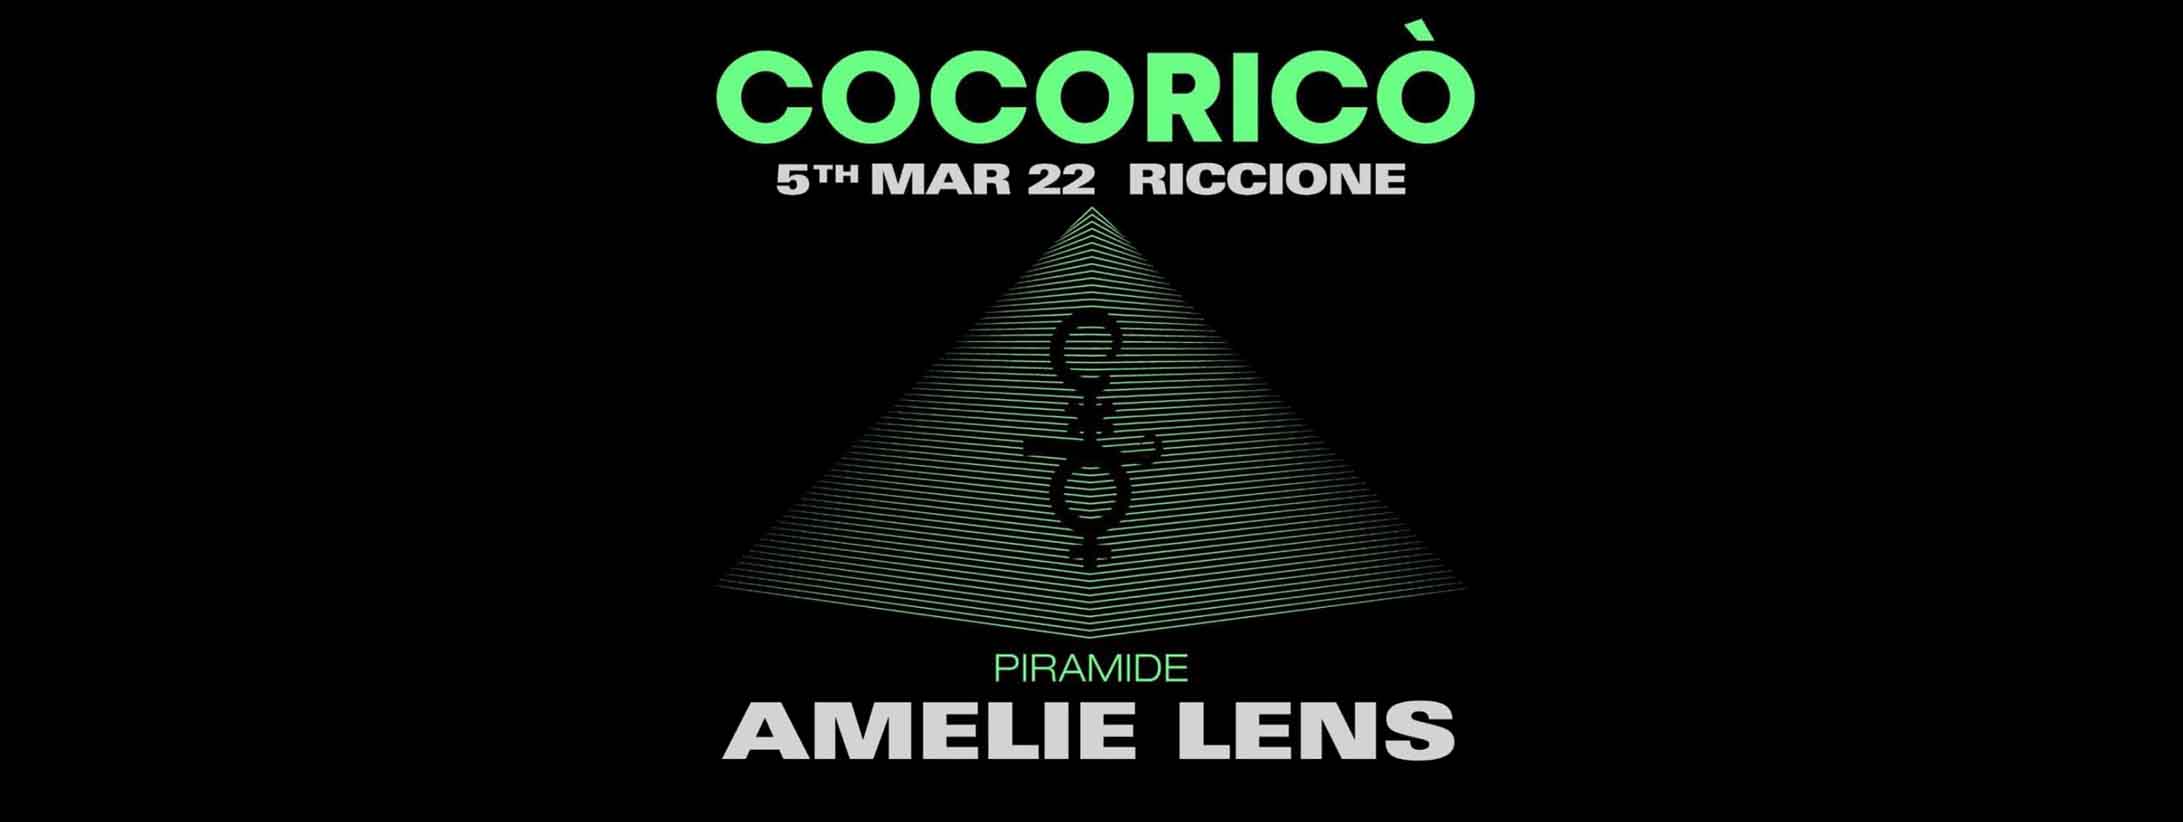 Amelie-lens-cocorico-05-marzo-2022